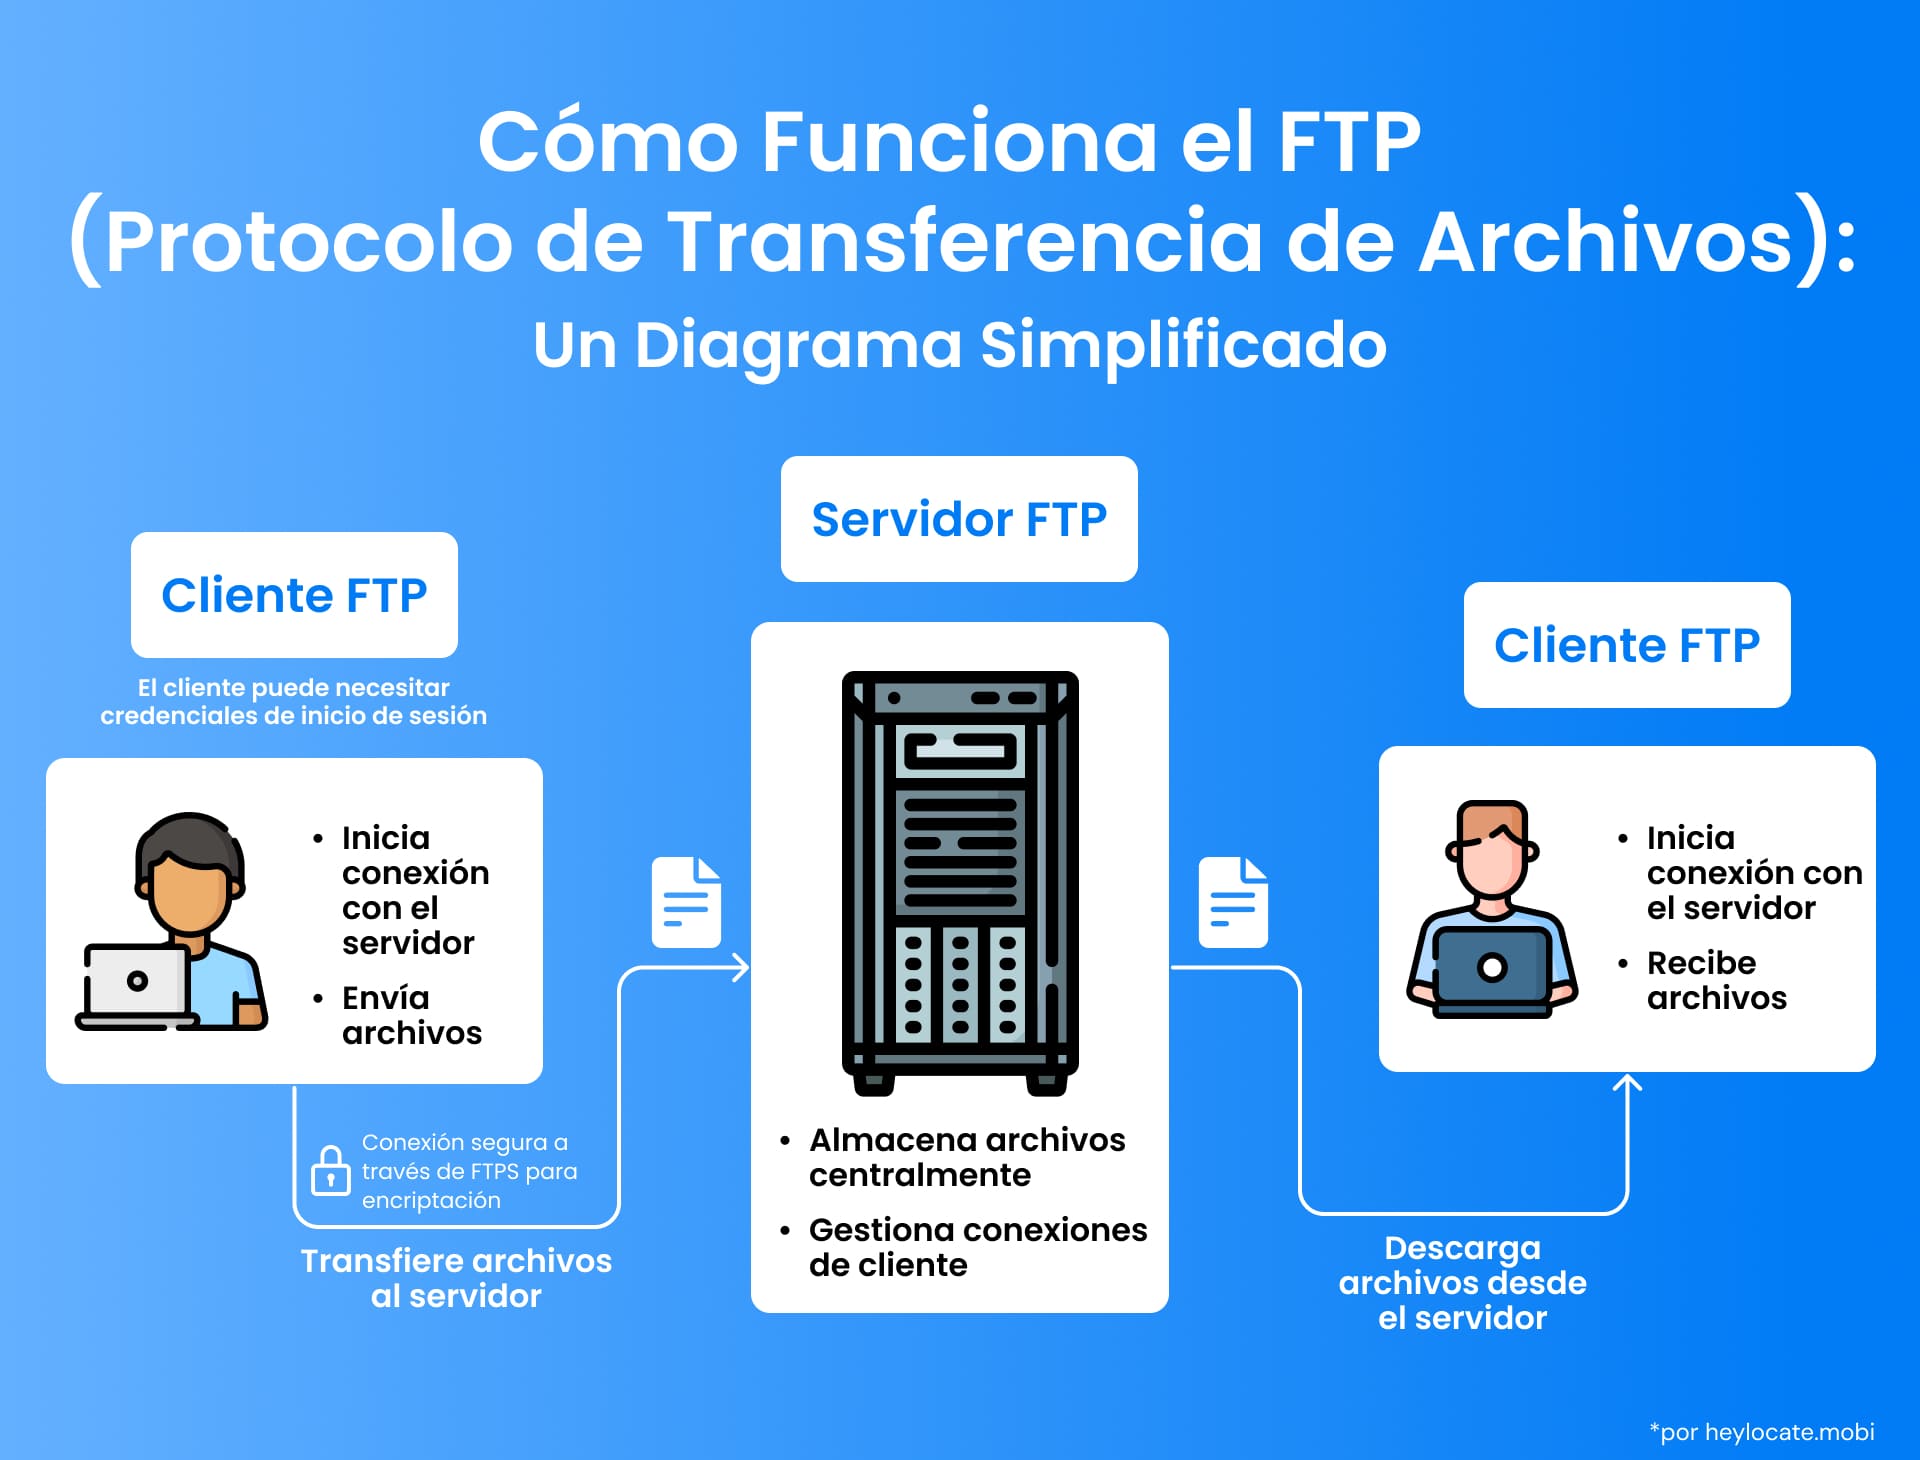 Una ilustración de cómo funciona FTP, mostrando cómo un cliente FTP envía archivos a través de un servidor FTP central y otro cliente FTP los recibe